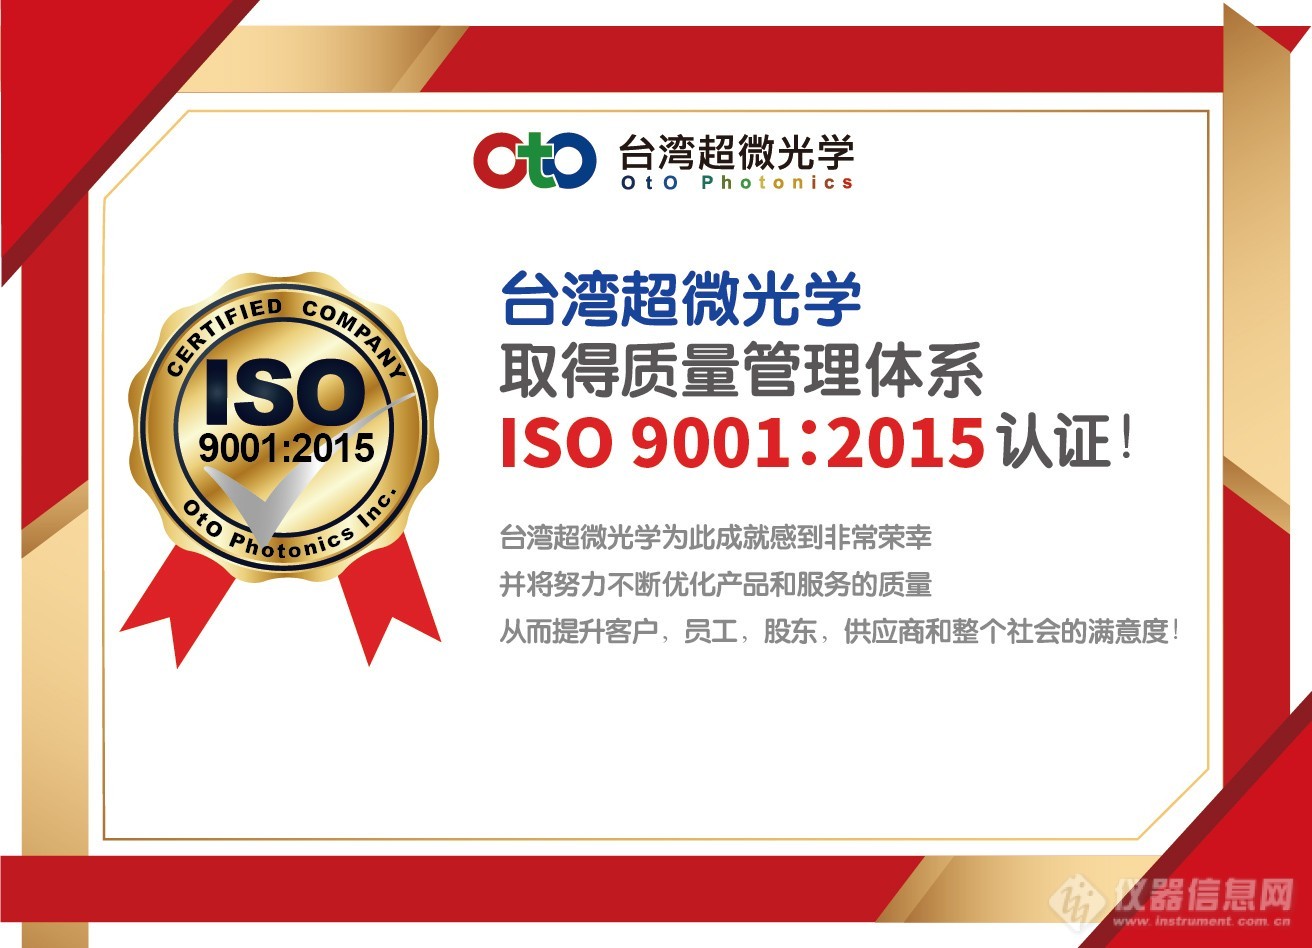 ISO-電子報-SC.jpg